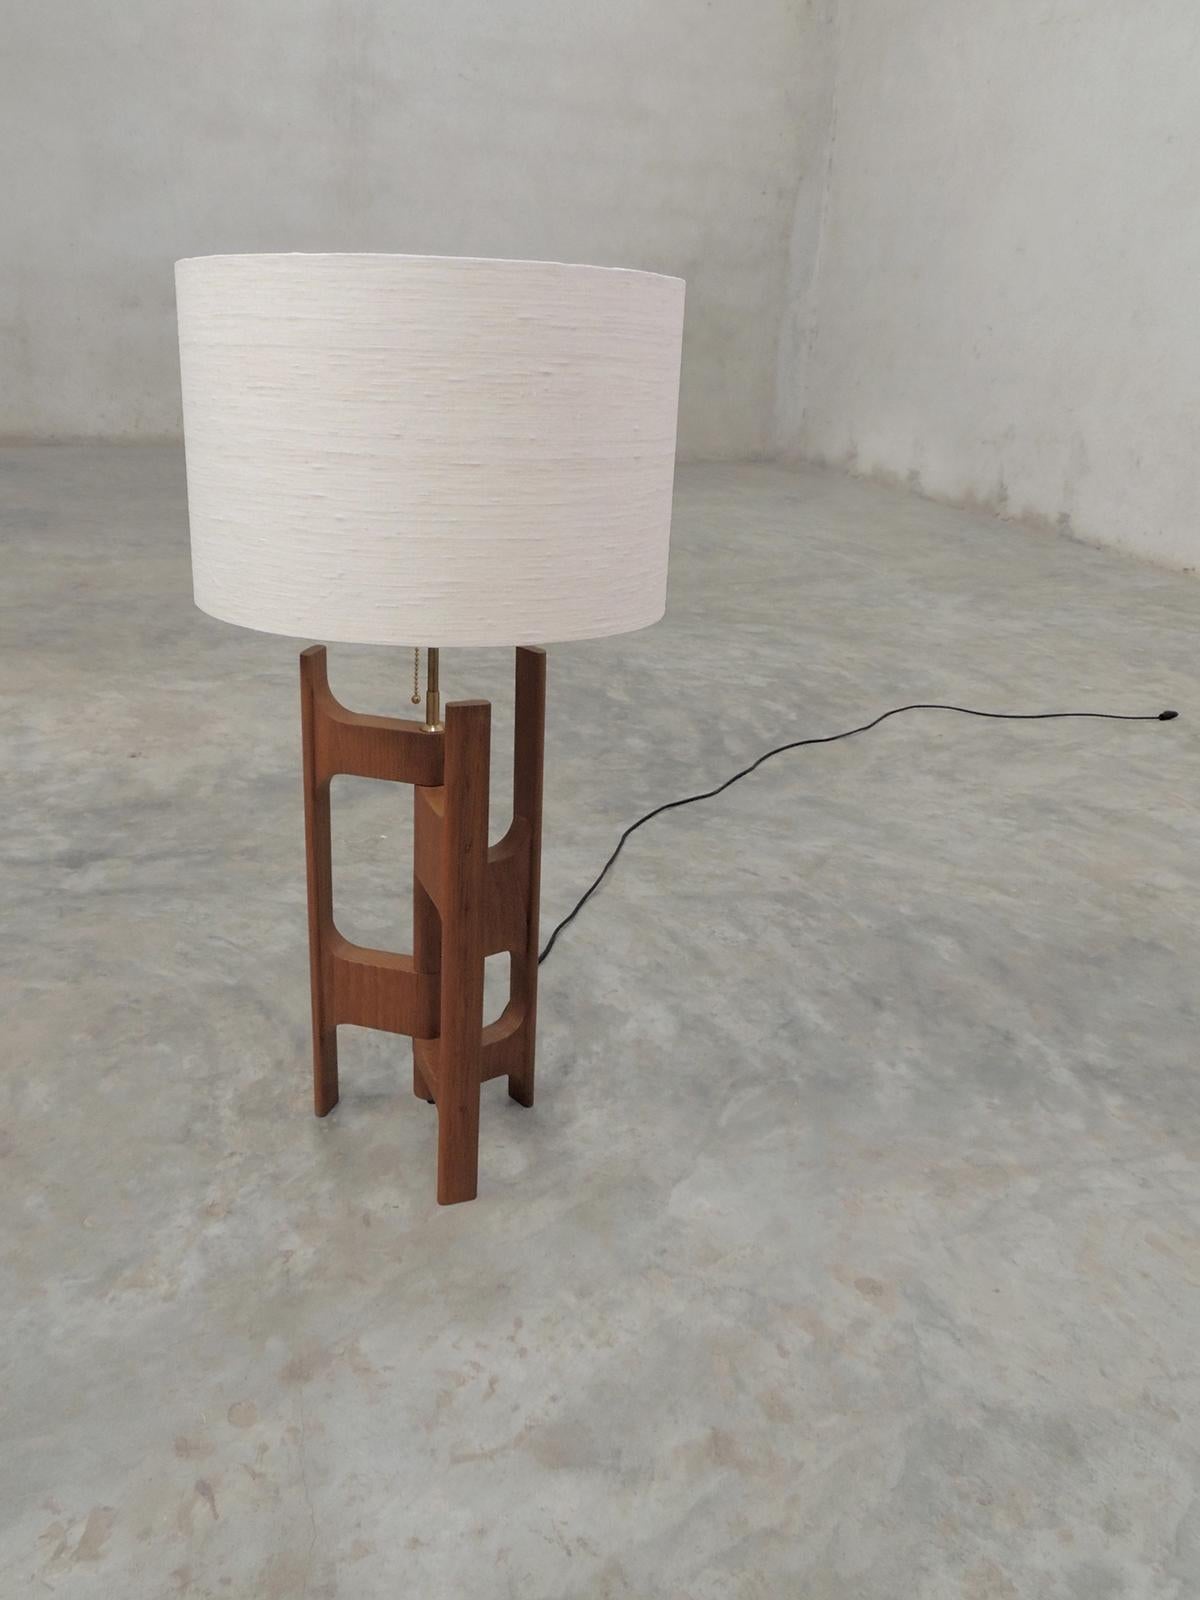 Sculptural organic modern table lamp. 


Dimensions (cm): Height 81.5 x 40.0 diameter
Material: Natural teak



 

   